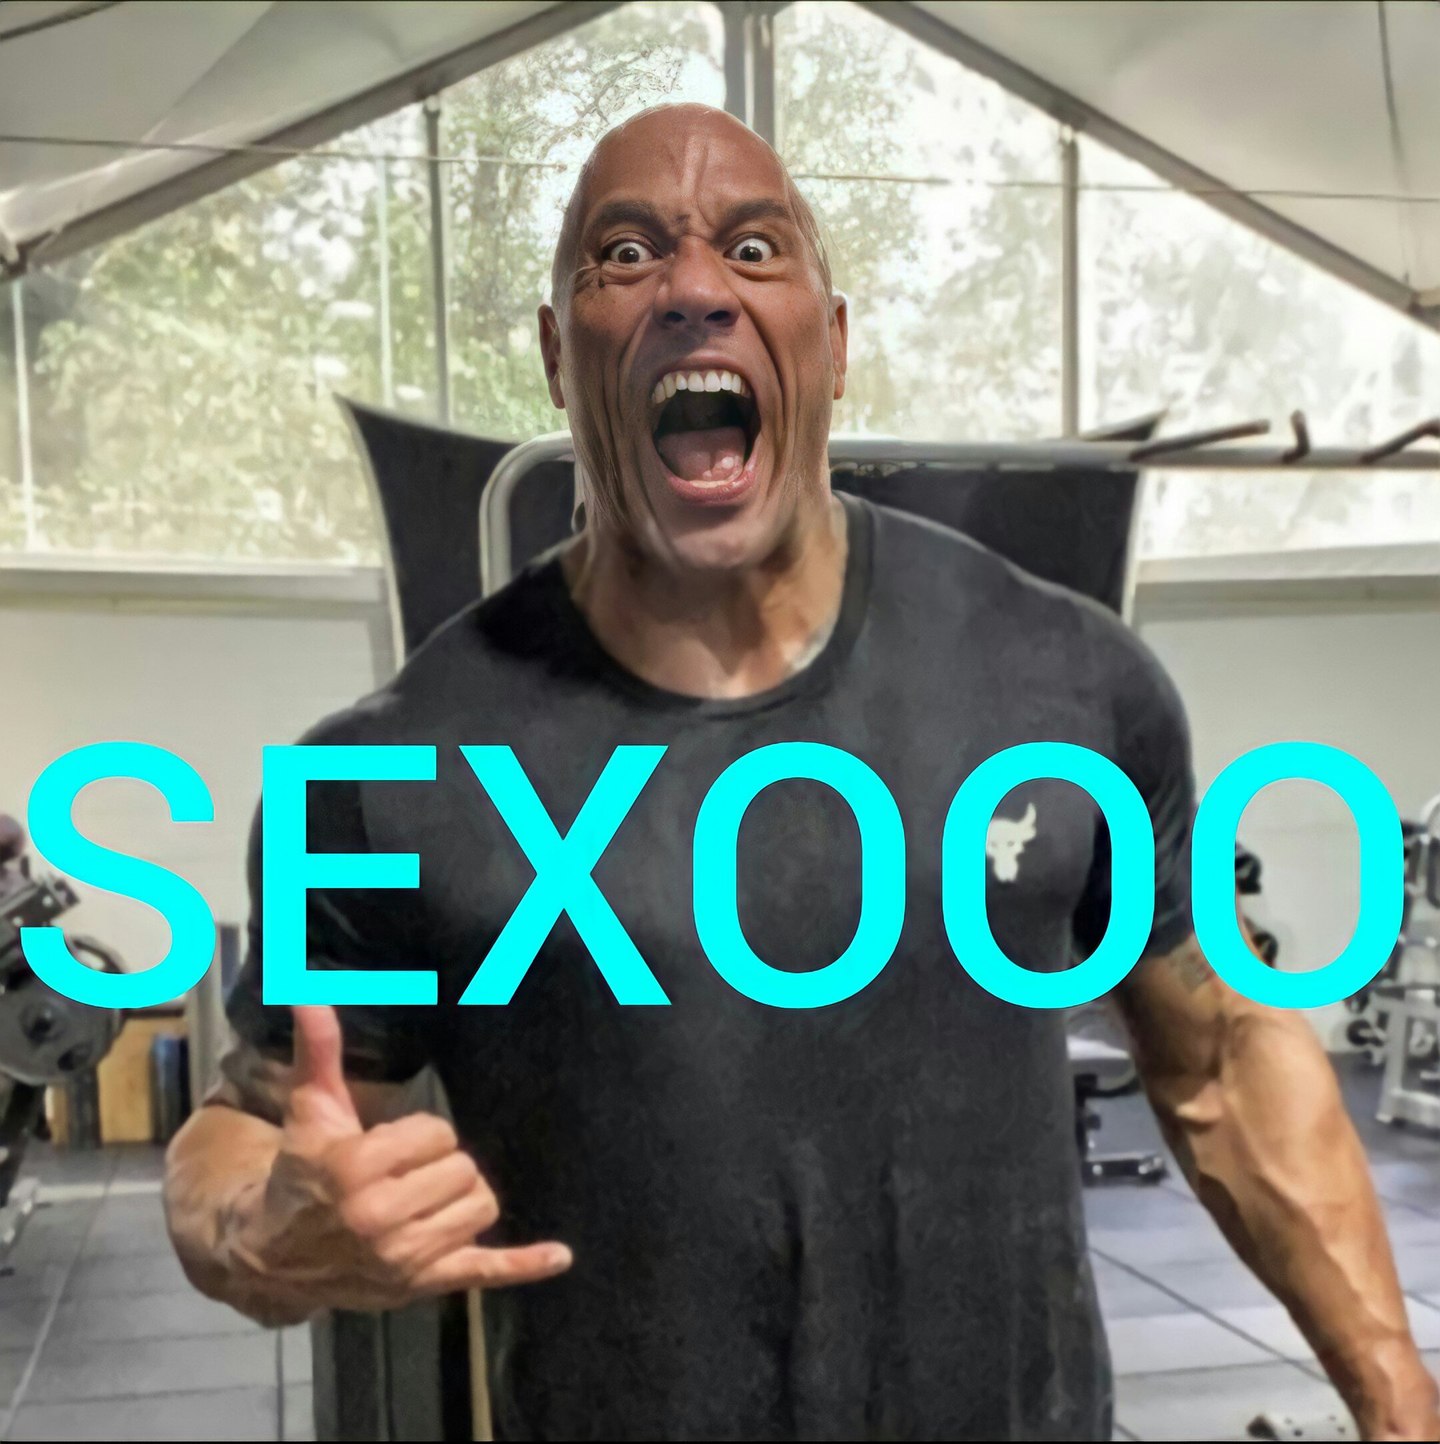 sexooo - meme